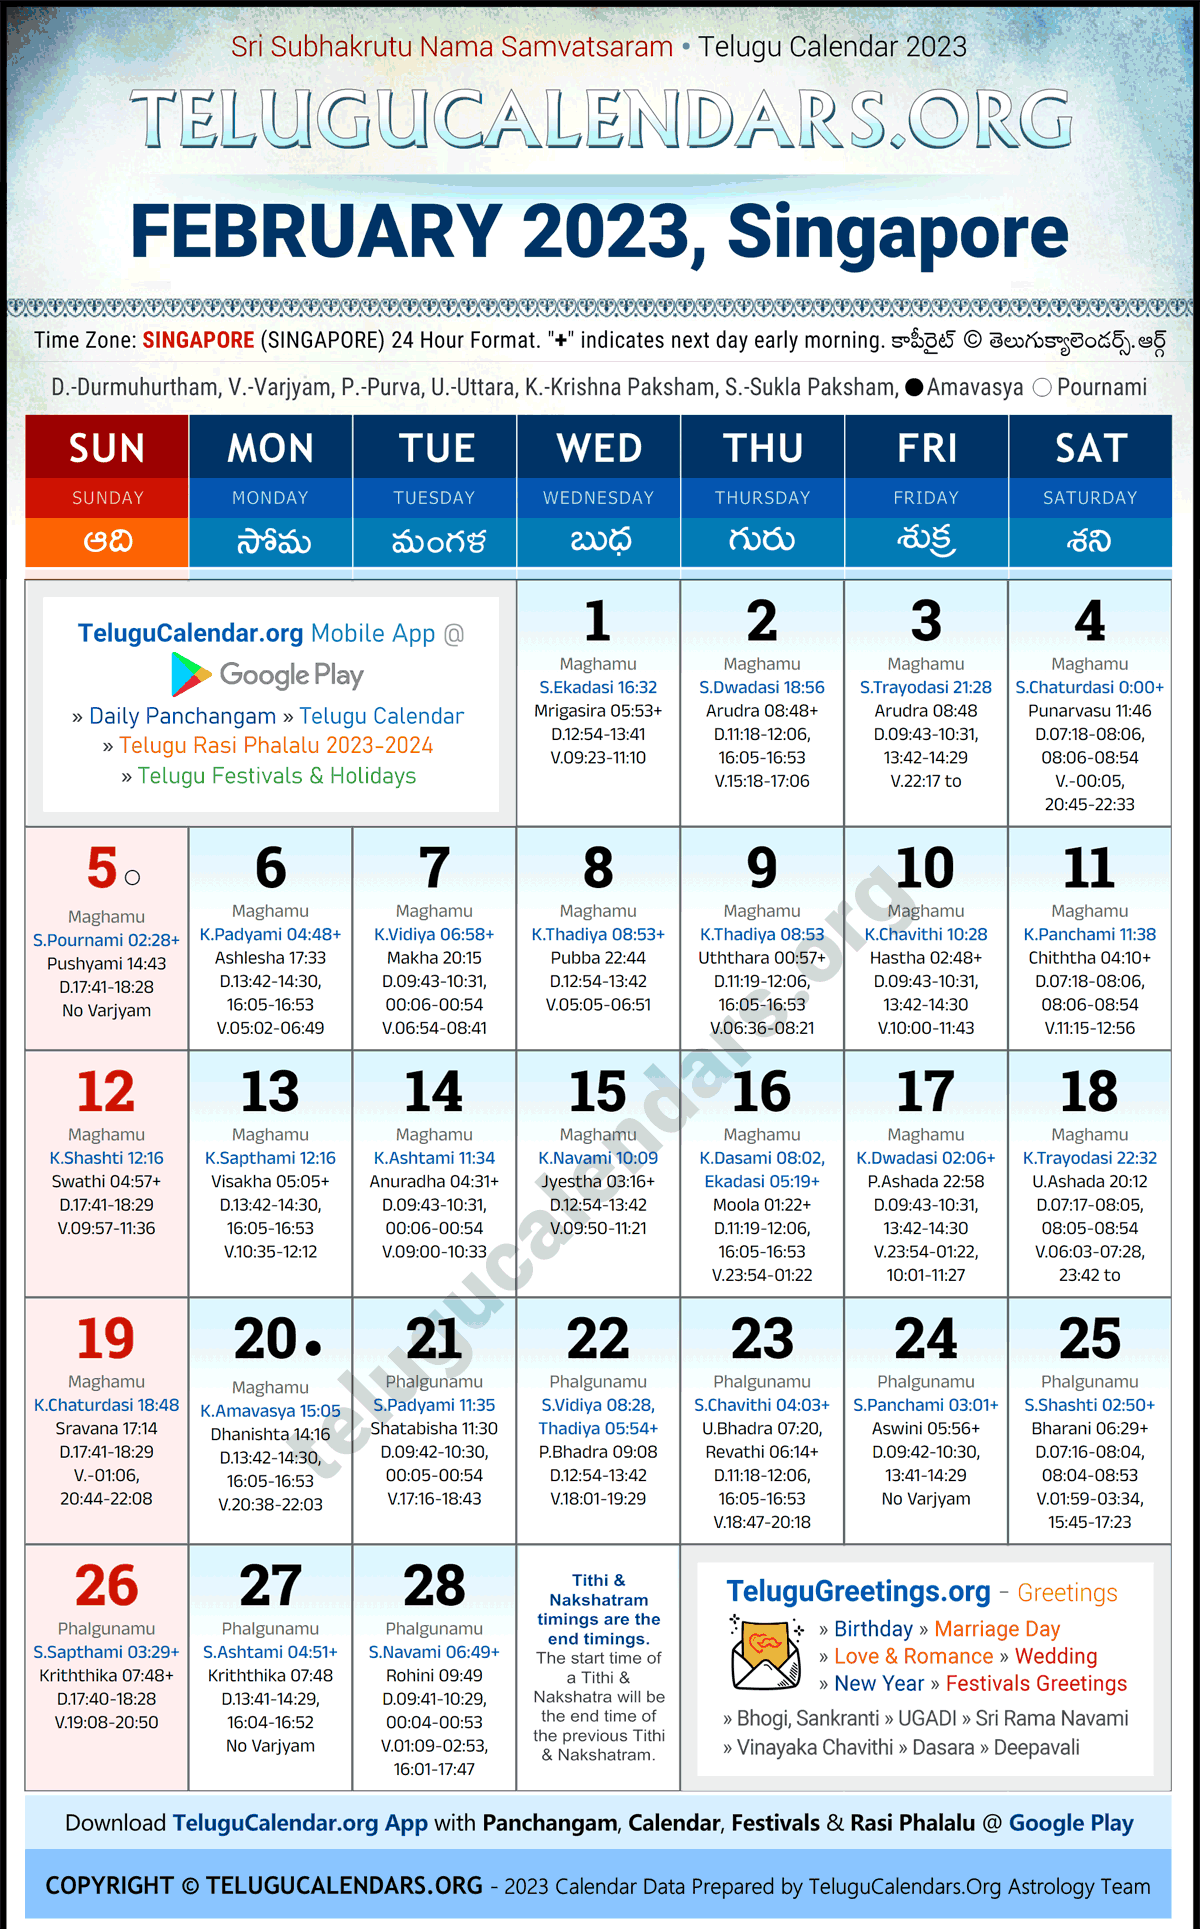 Telugu Calendar 2023 February Festivals for Singapore